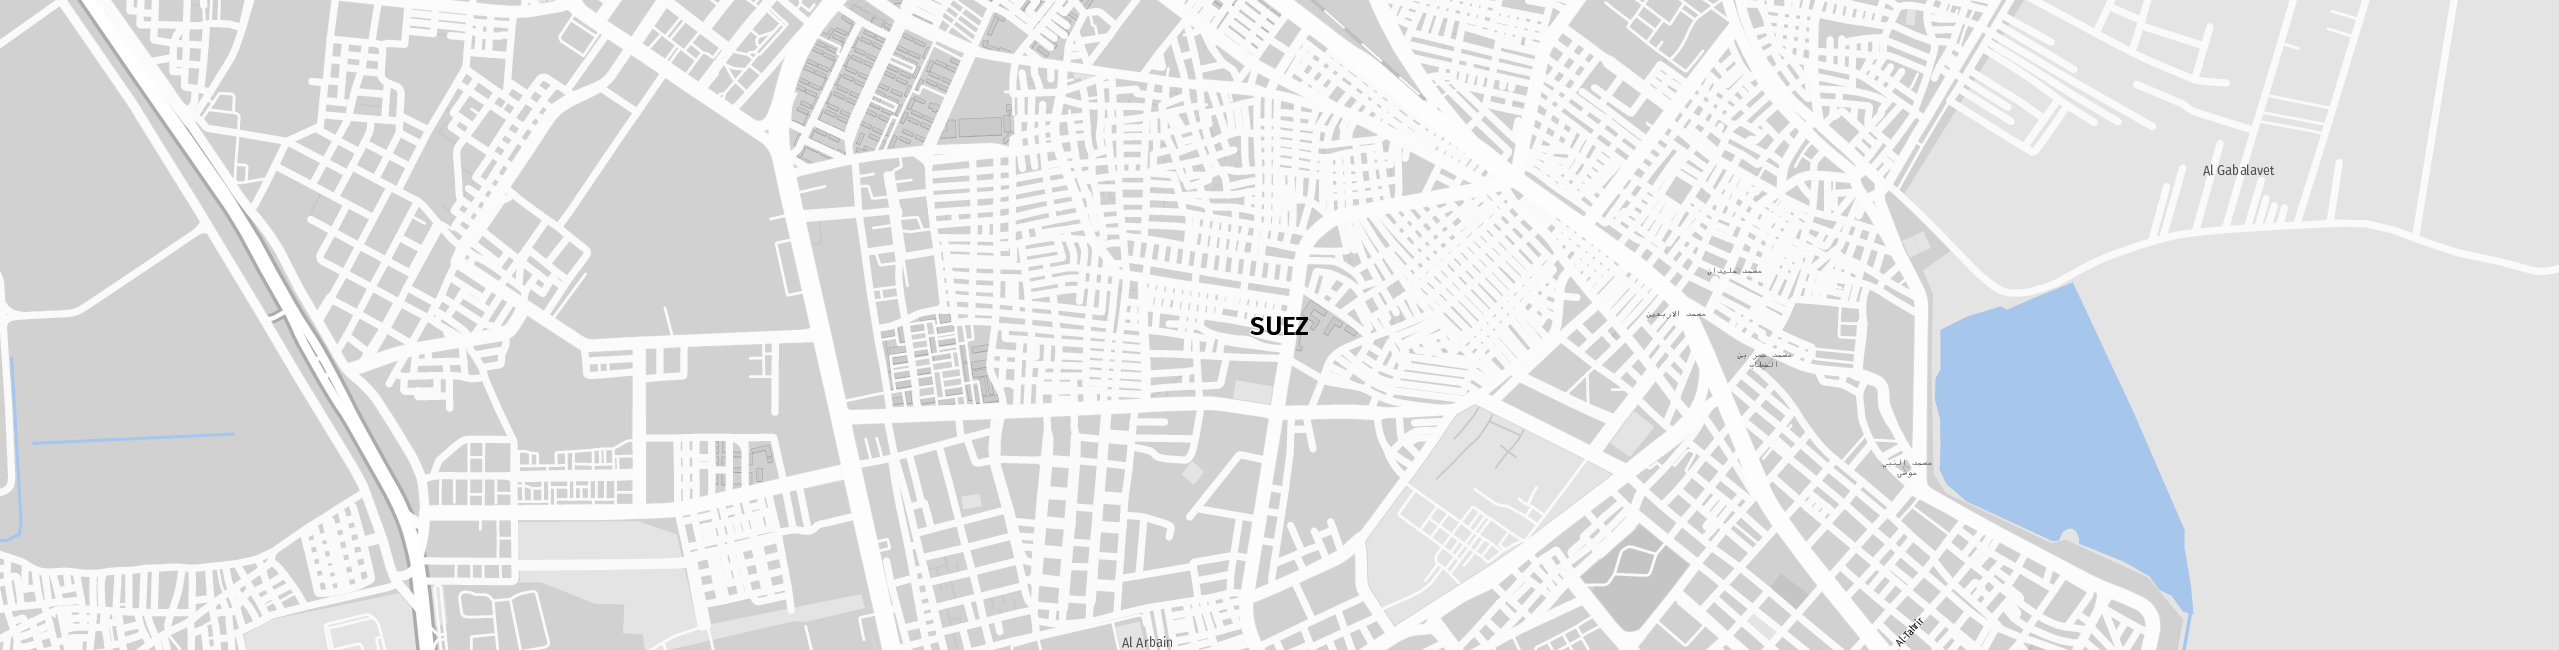 Stadtplan Sues zum Downloaden.